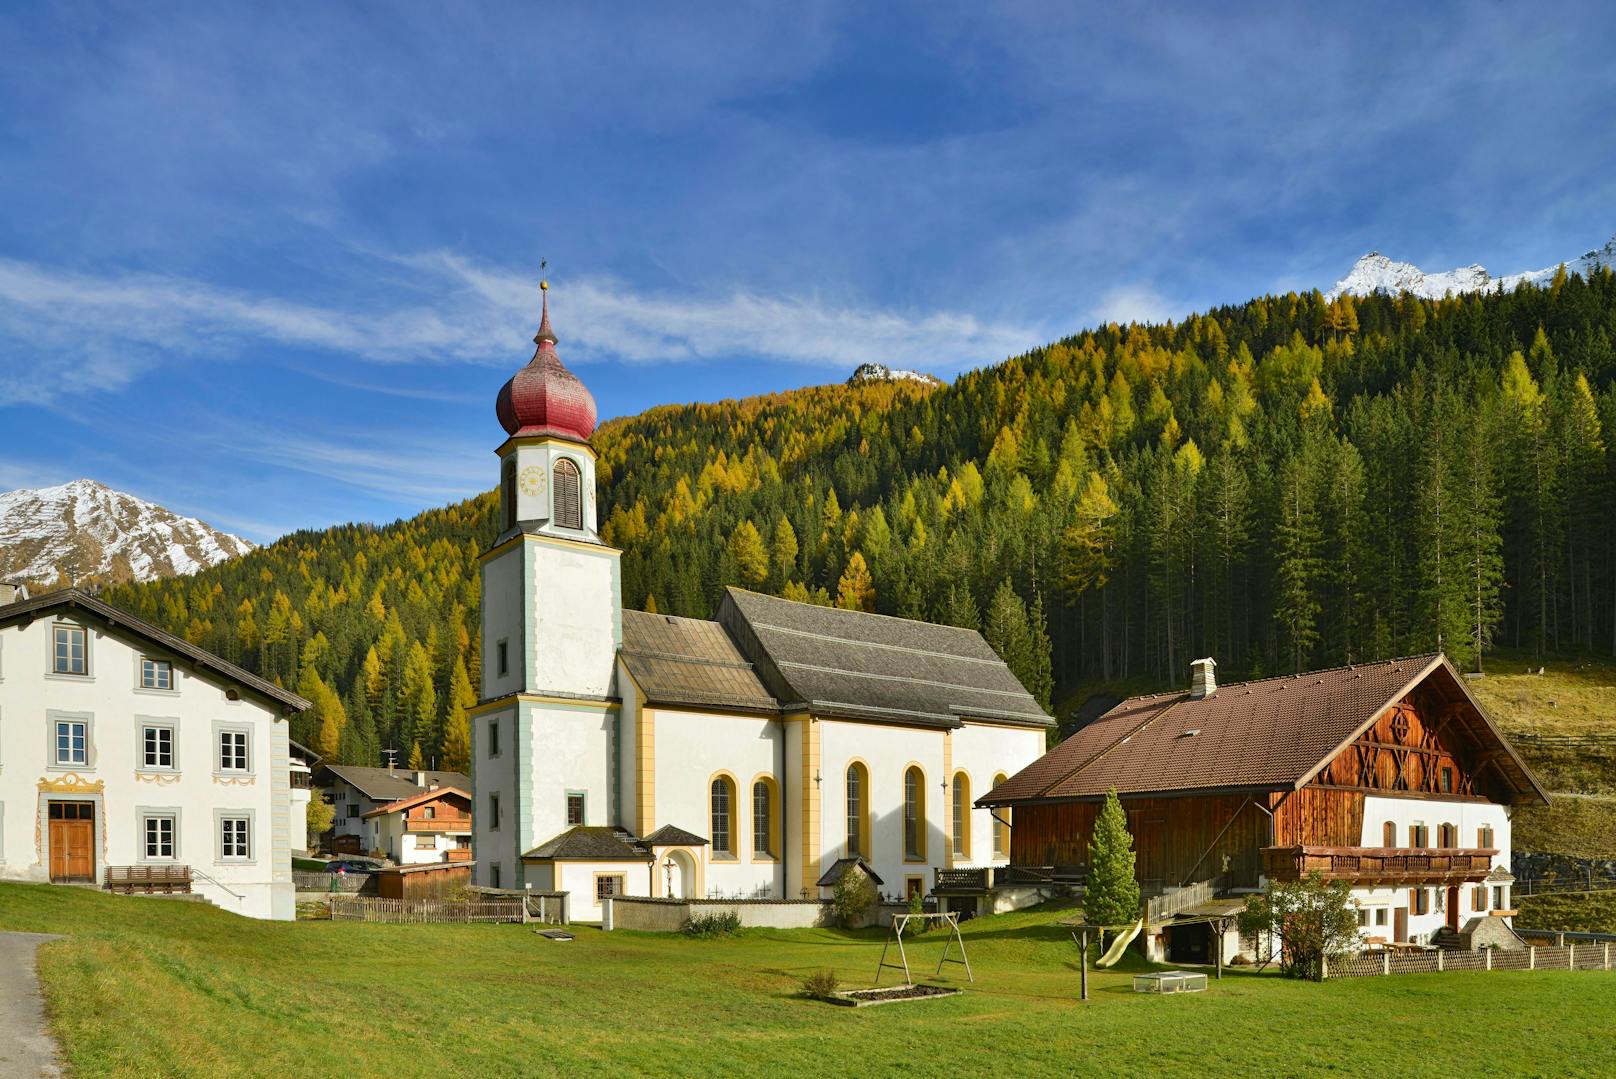 Ganze Tiroler Gemeinde soll nun zum Gurgeltest antreten